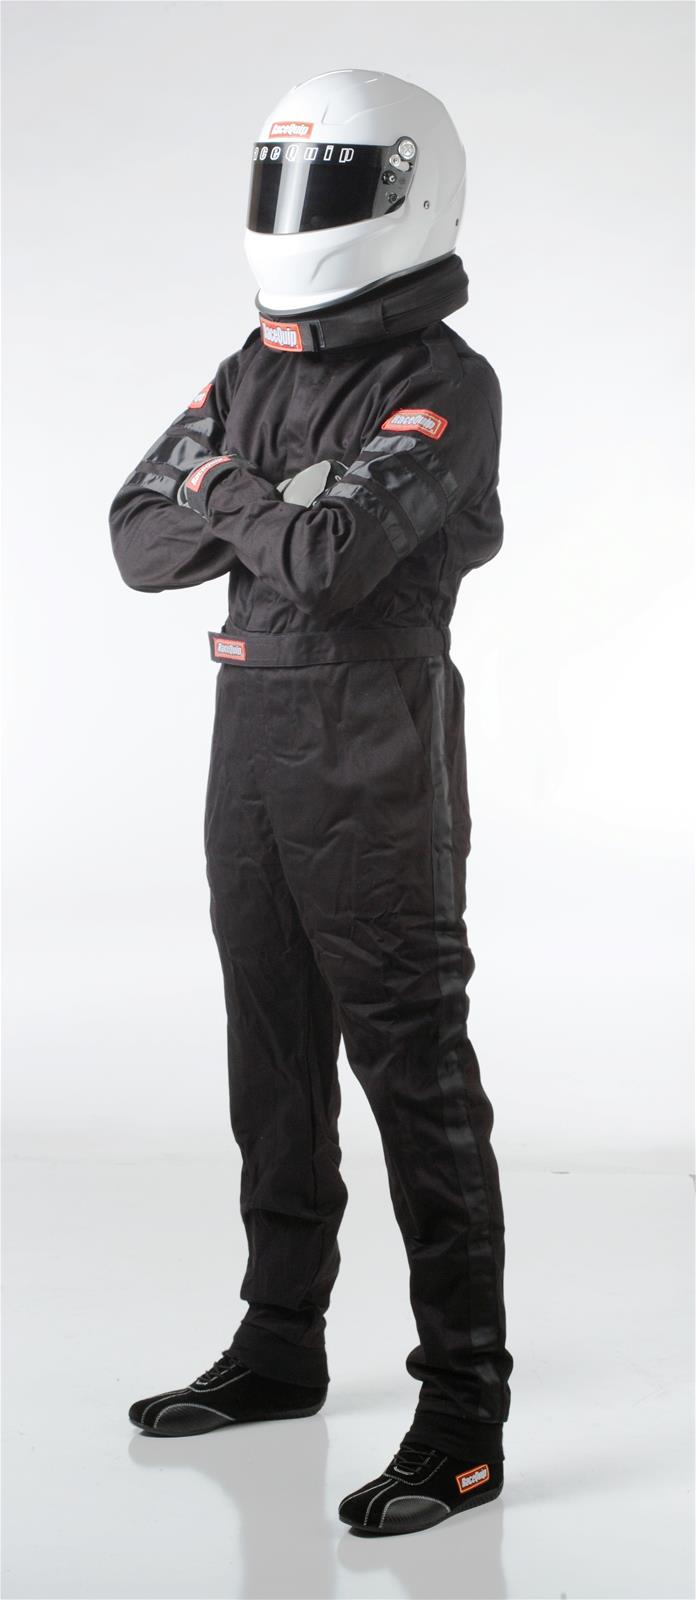 Racequip 110005 Race Suit 1-Layer - Large SFI-1 - Black